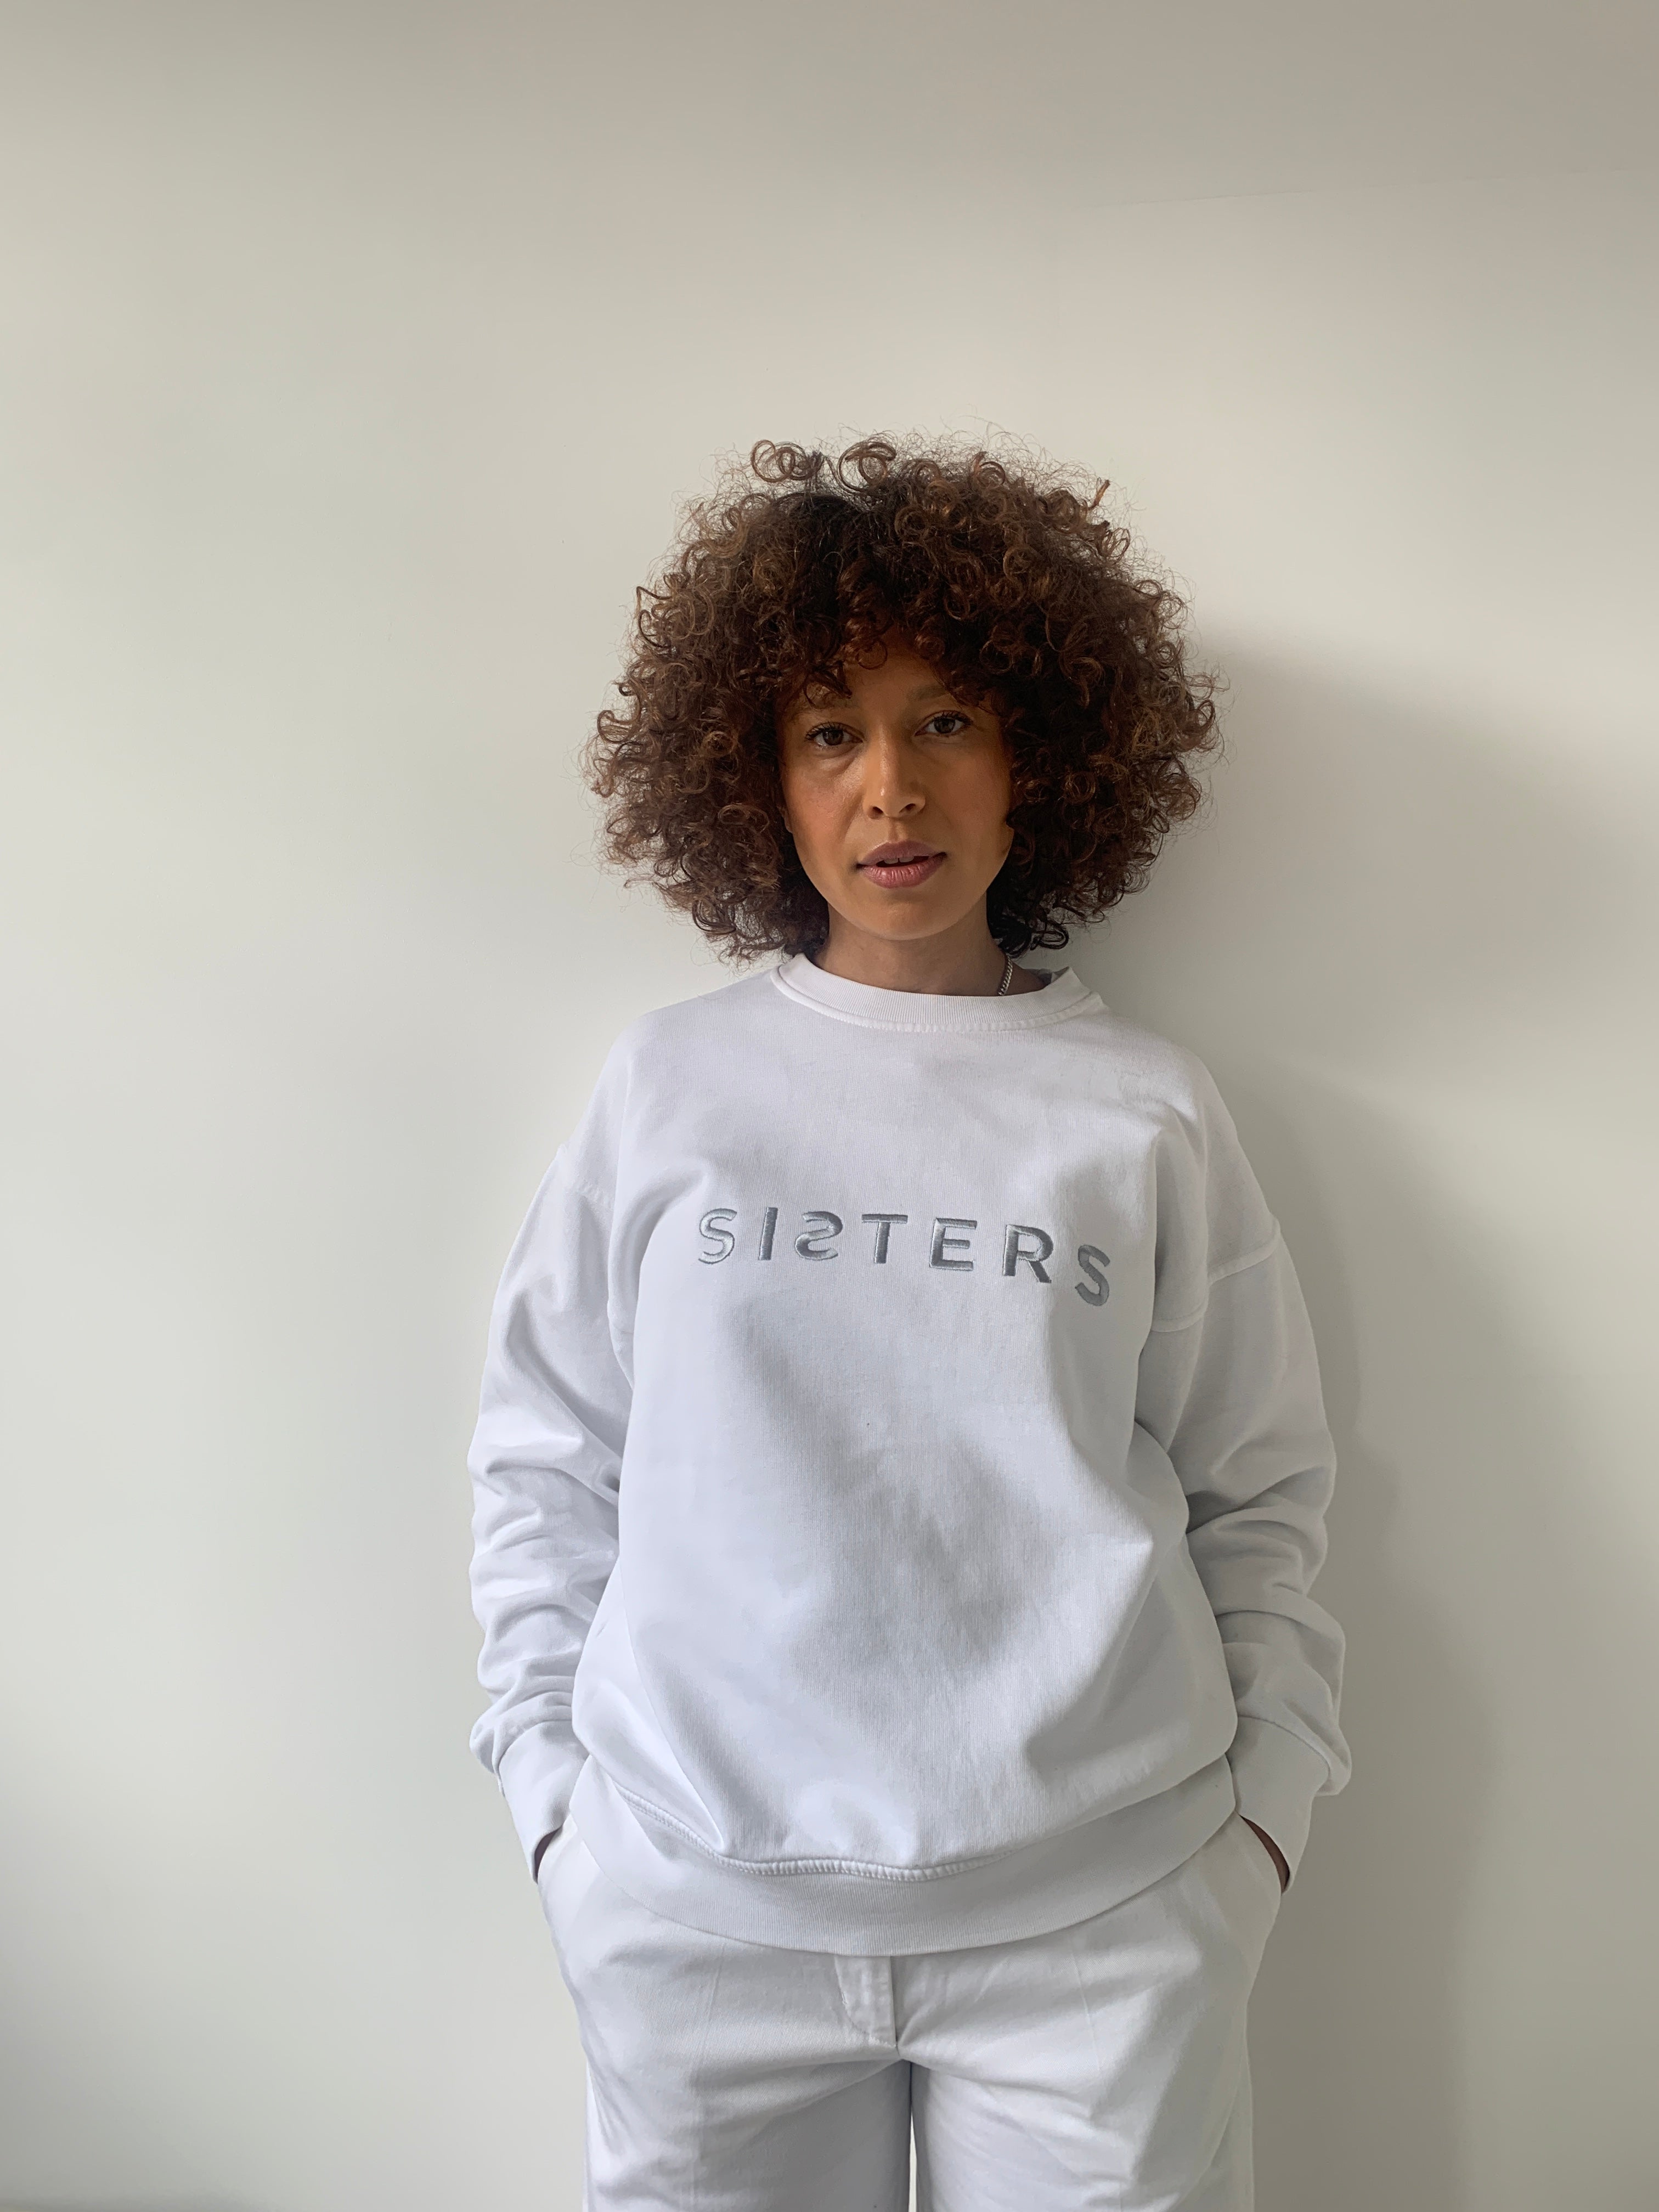 SISTERS embroidered sweatshirts. Medium